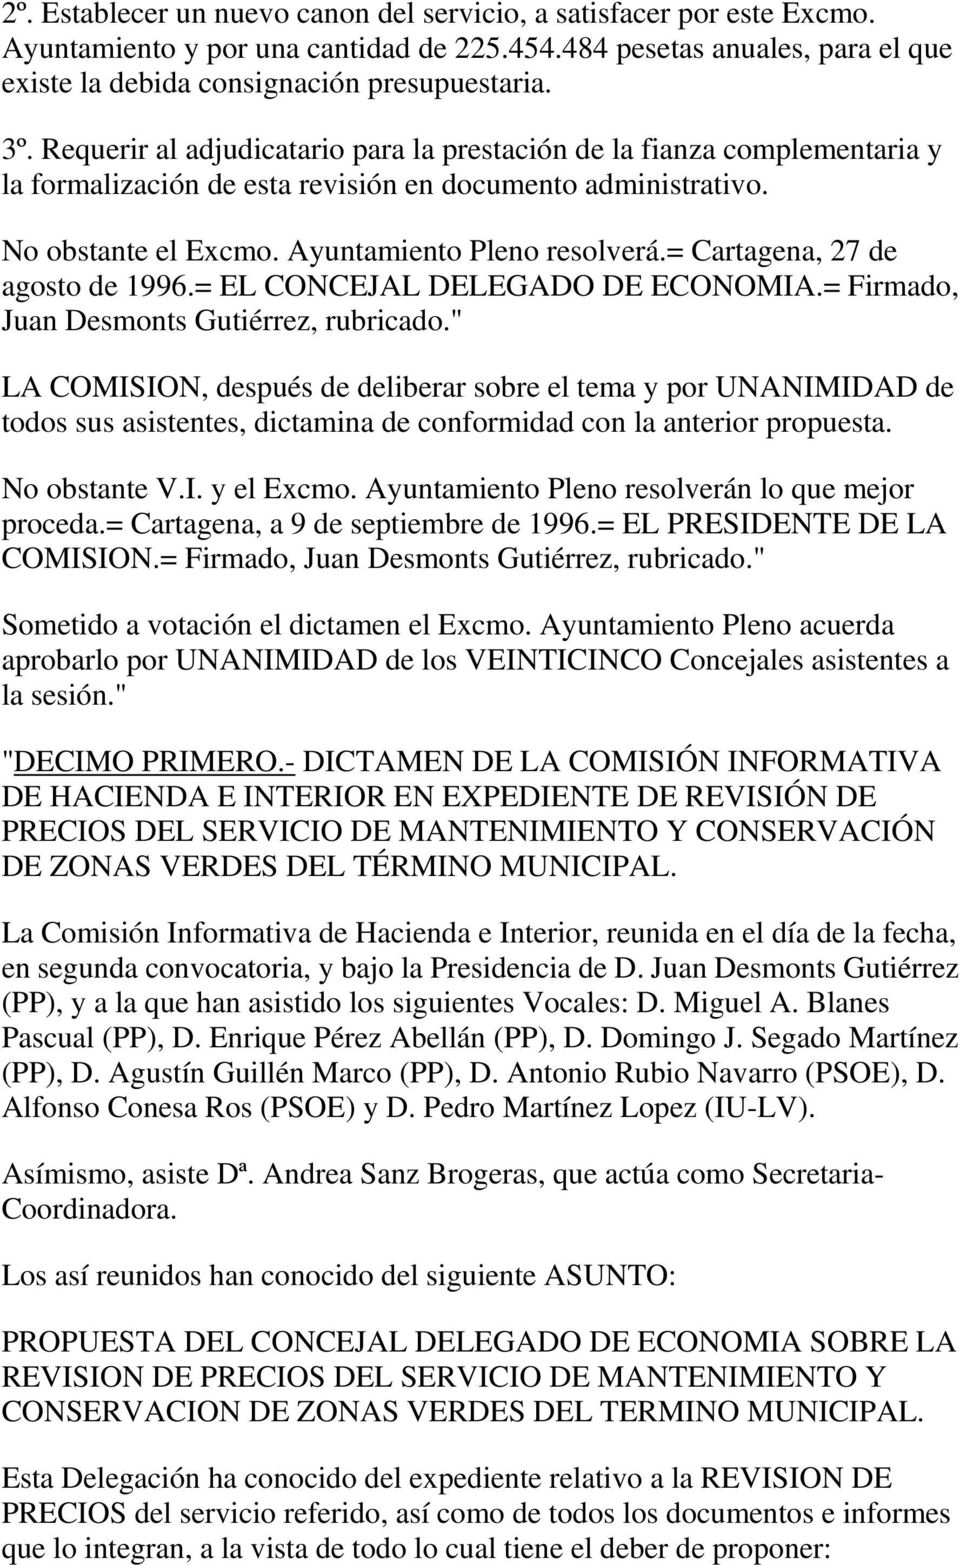 = Cartagena, 27 de agosto de 1996.= EL CONCEJAL DELEGADO DE ECONOMIA.= Firmado, Juan Desmonts Gutiérrez, rubricado.